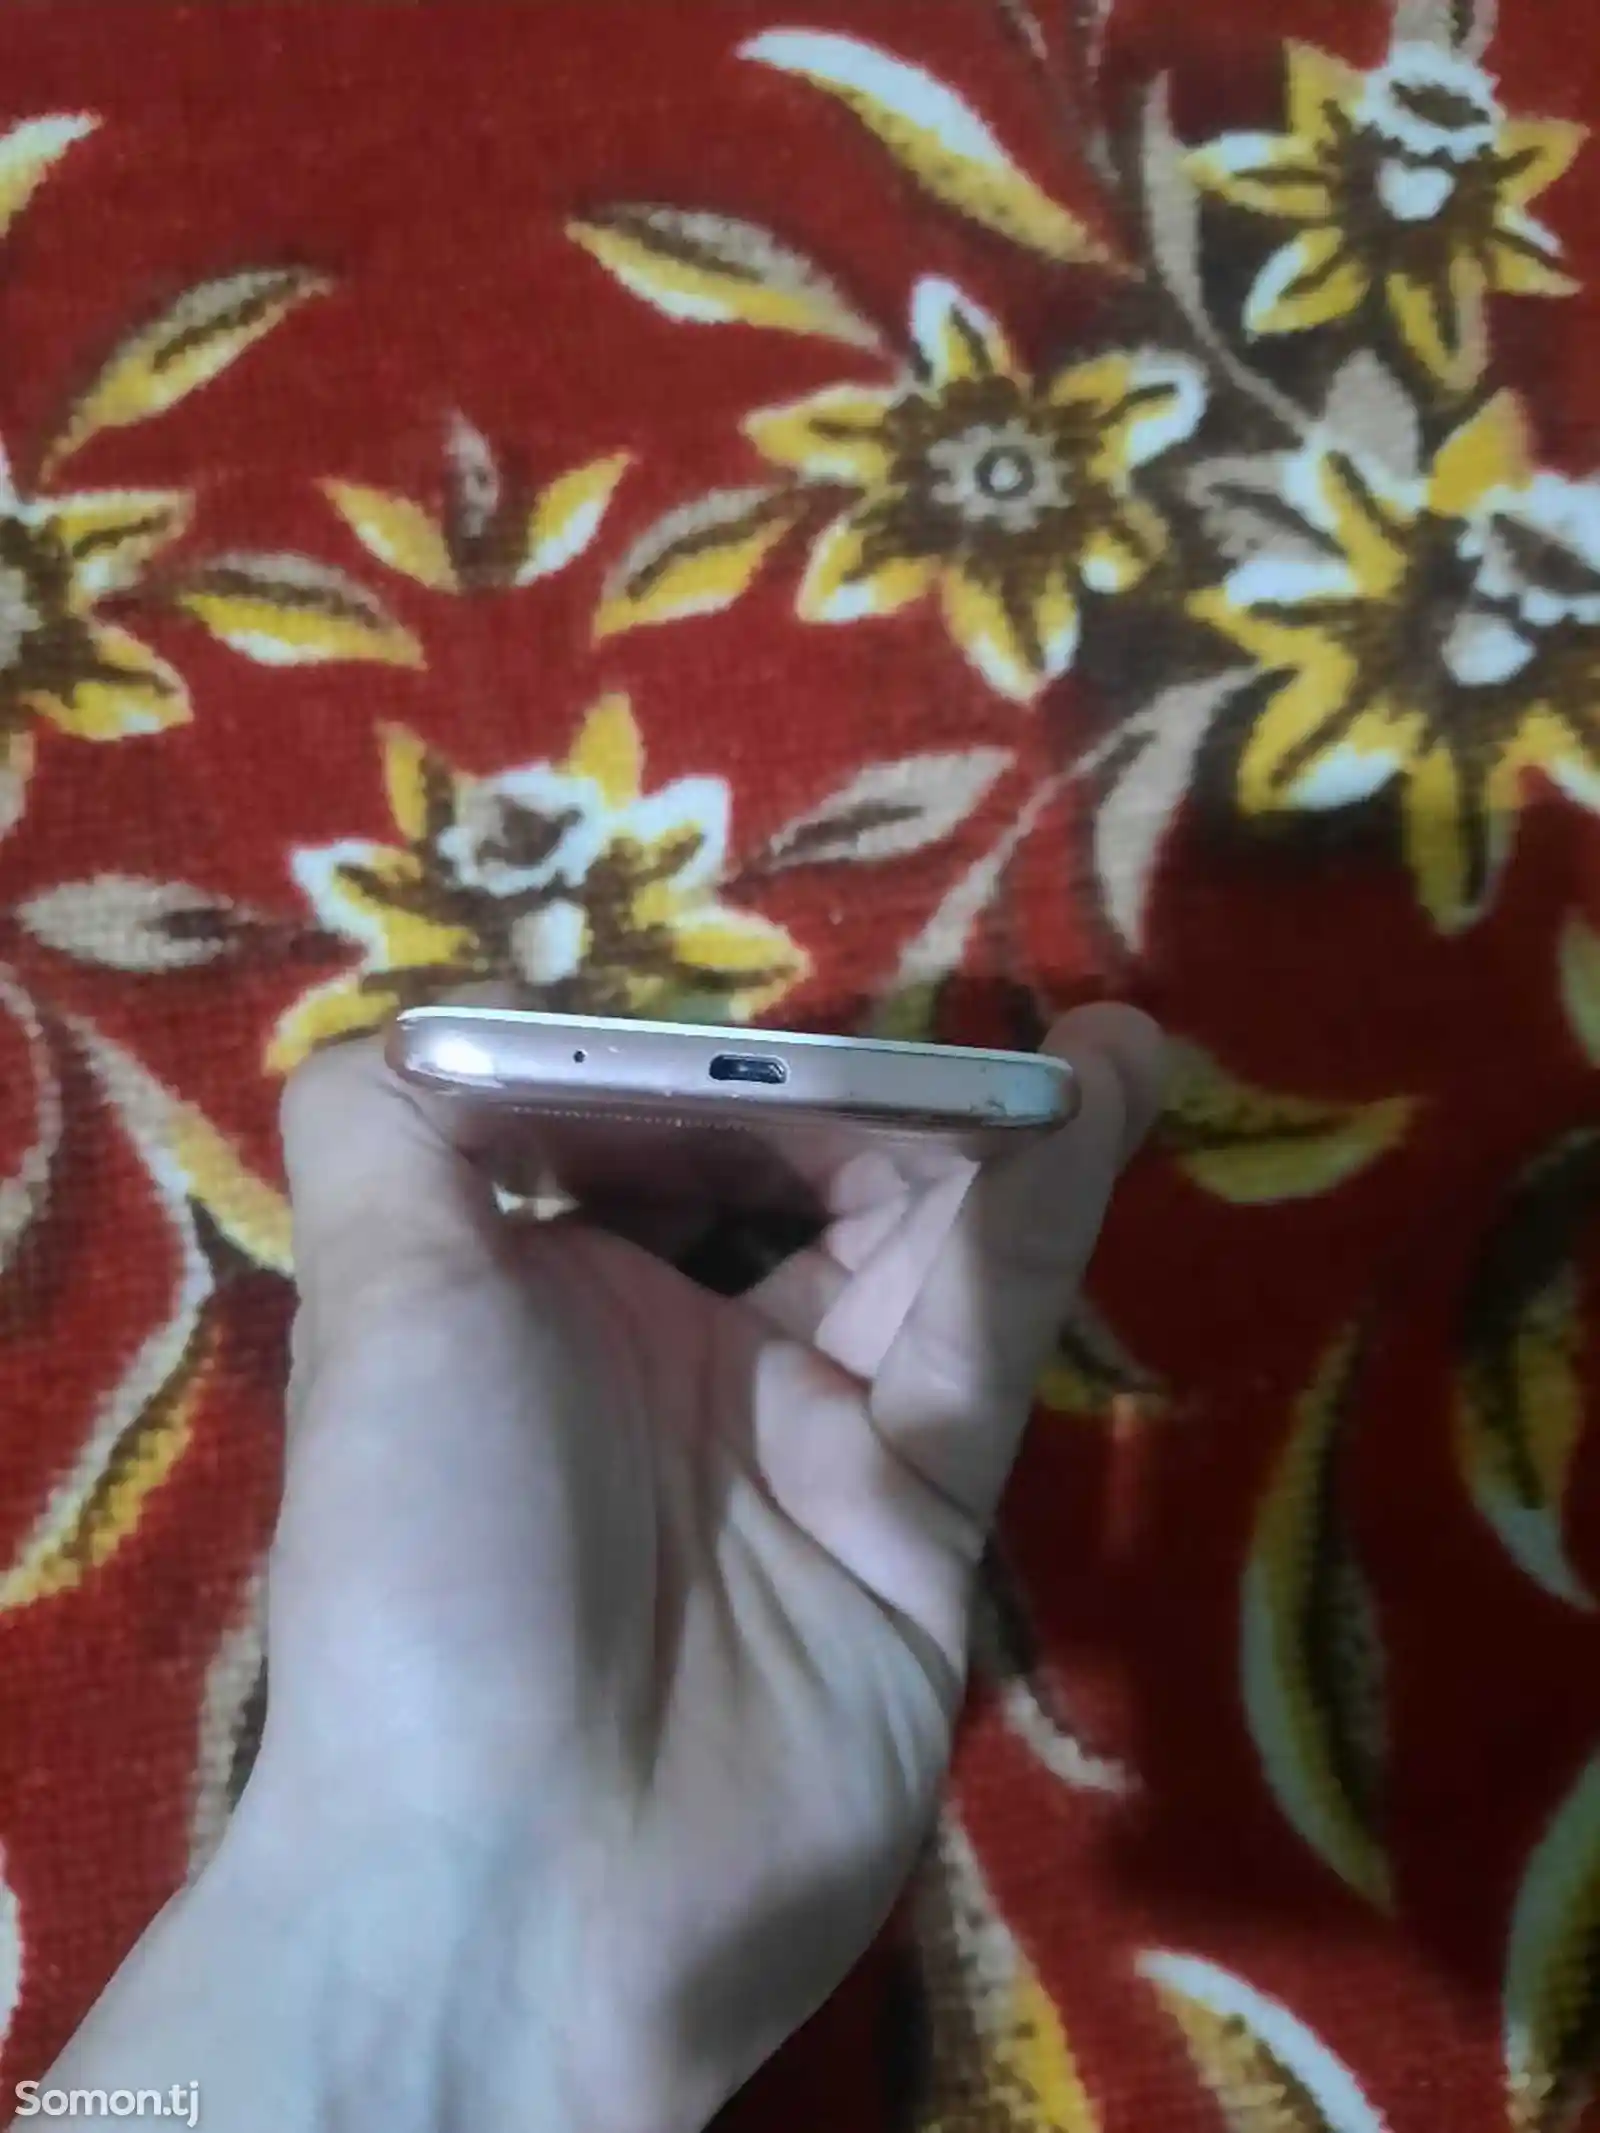 Xiaomi Redmi 5A-4